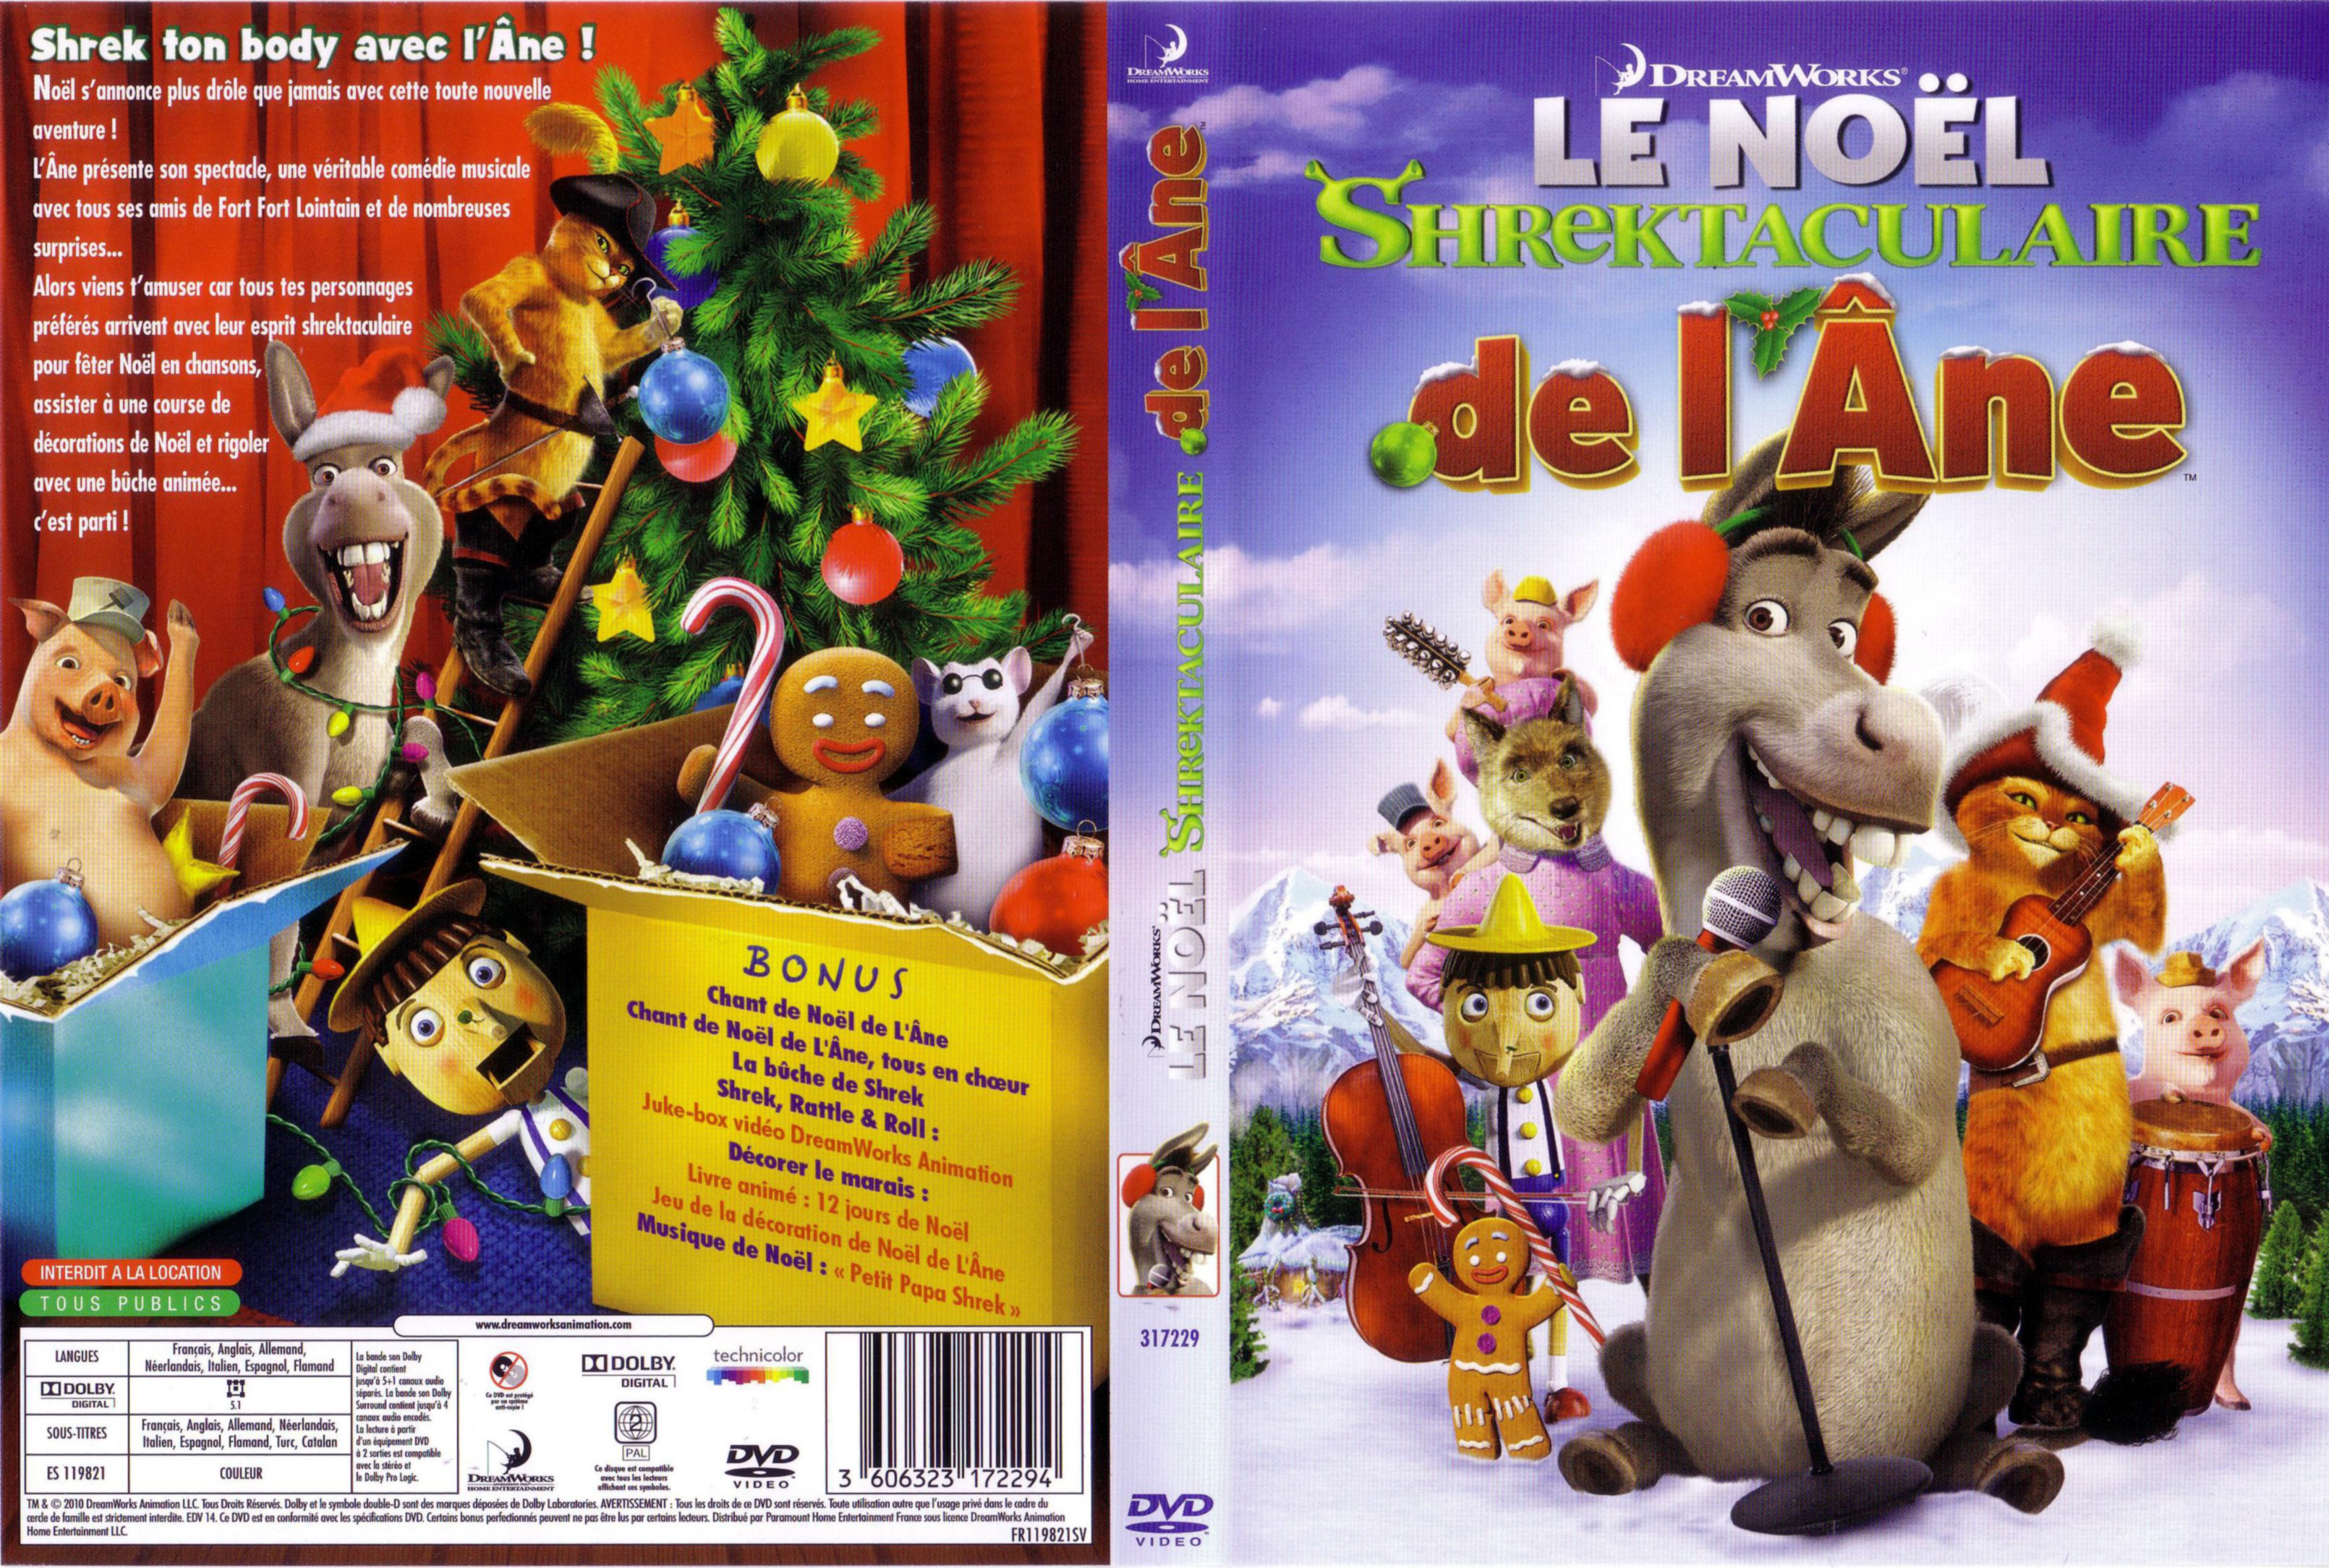 Jaquette DVD Le Nol Shrektaculaire de l